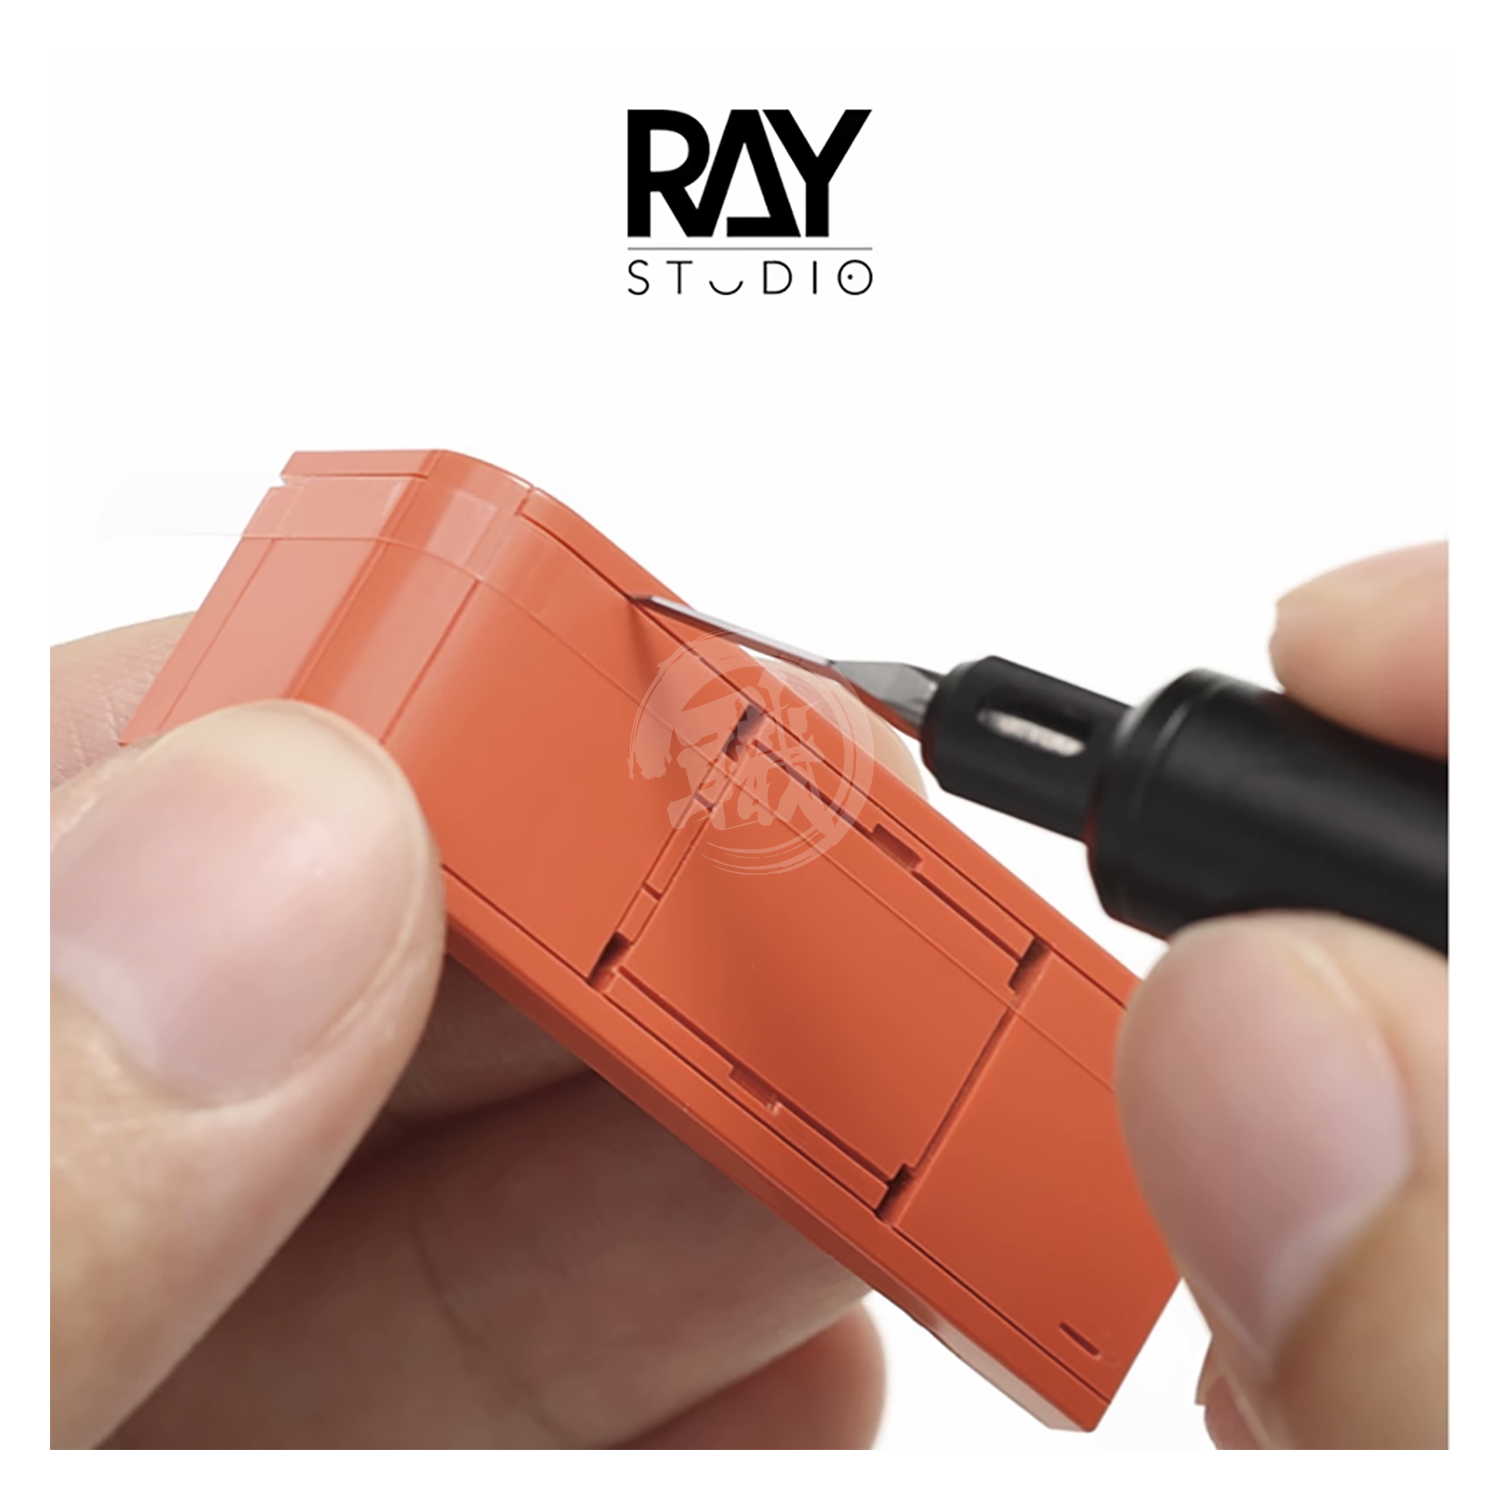 Ray Studio - Beacon [0.075mm] - ShokuninGunpla